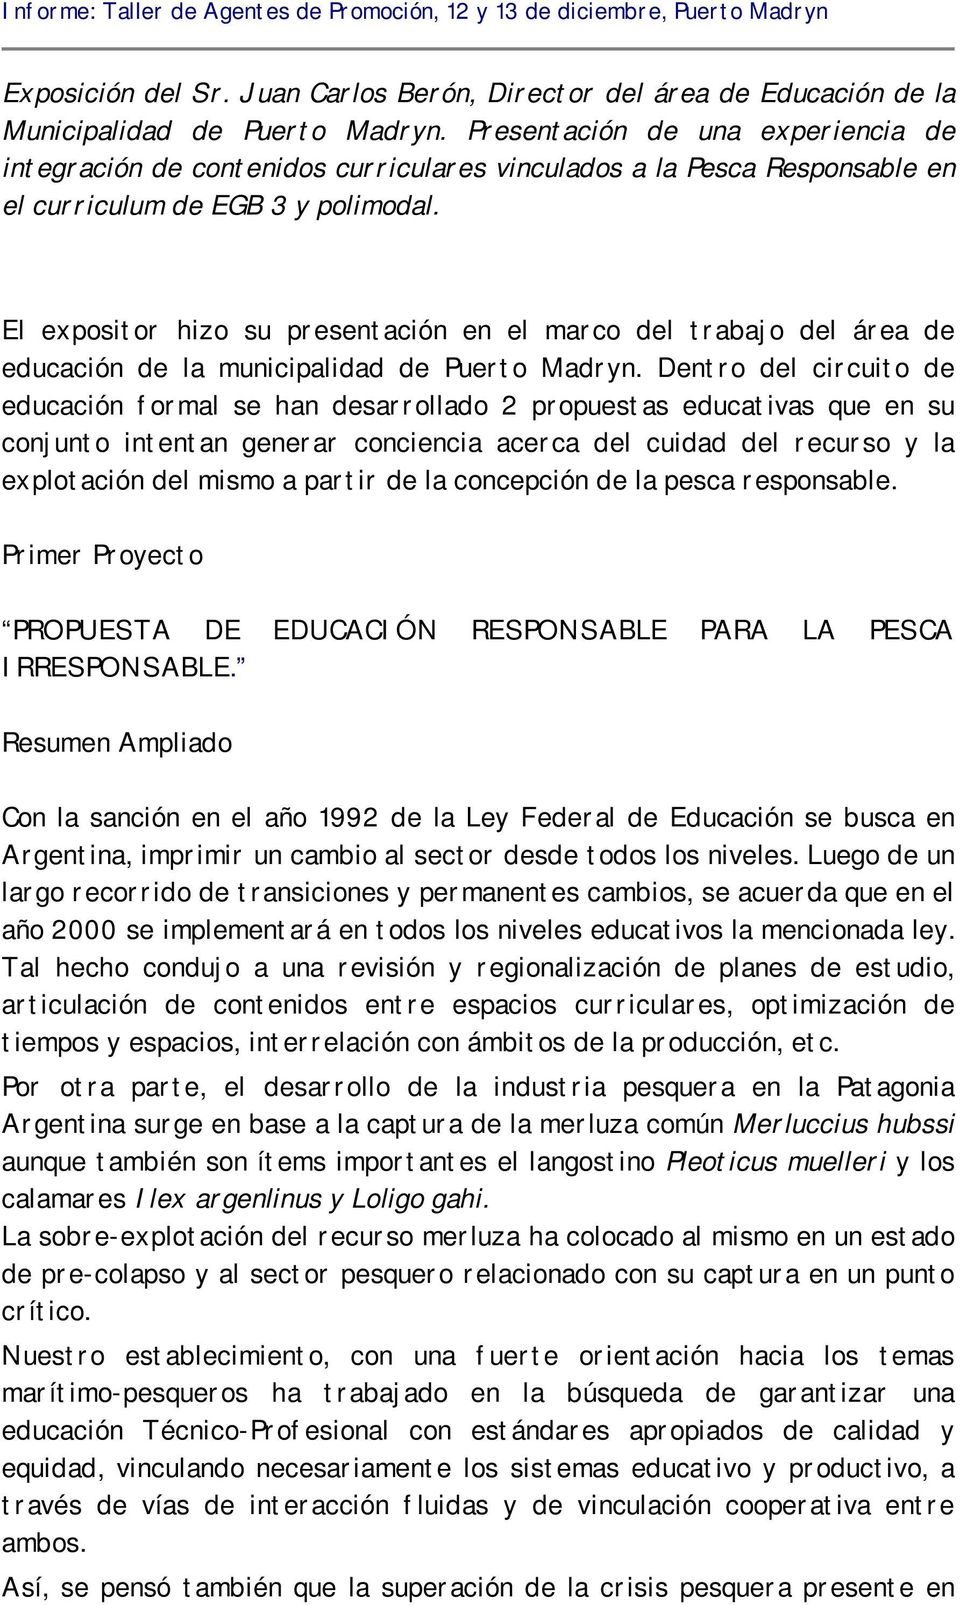 El expositor hizo su presentación en el marco del trabajo del área de educación de la municipalidad de Puerto Madryn.